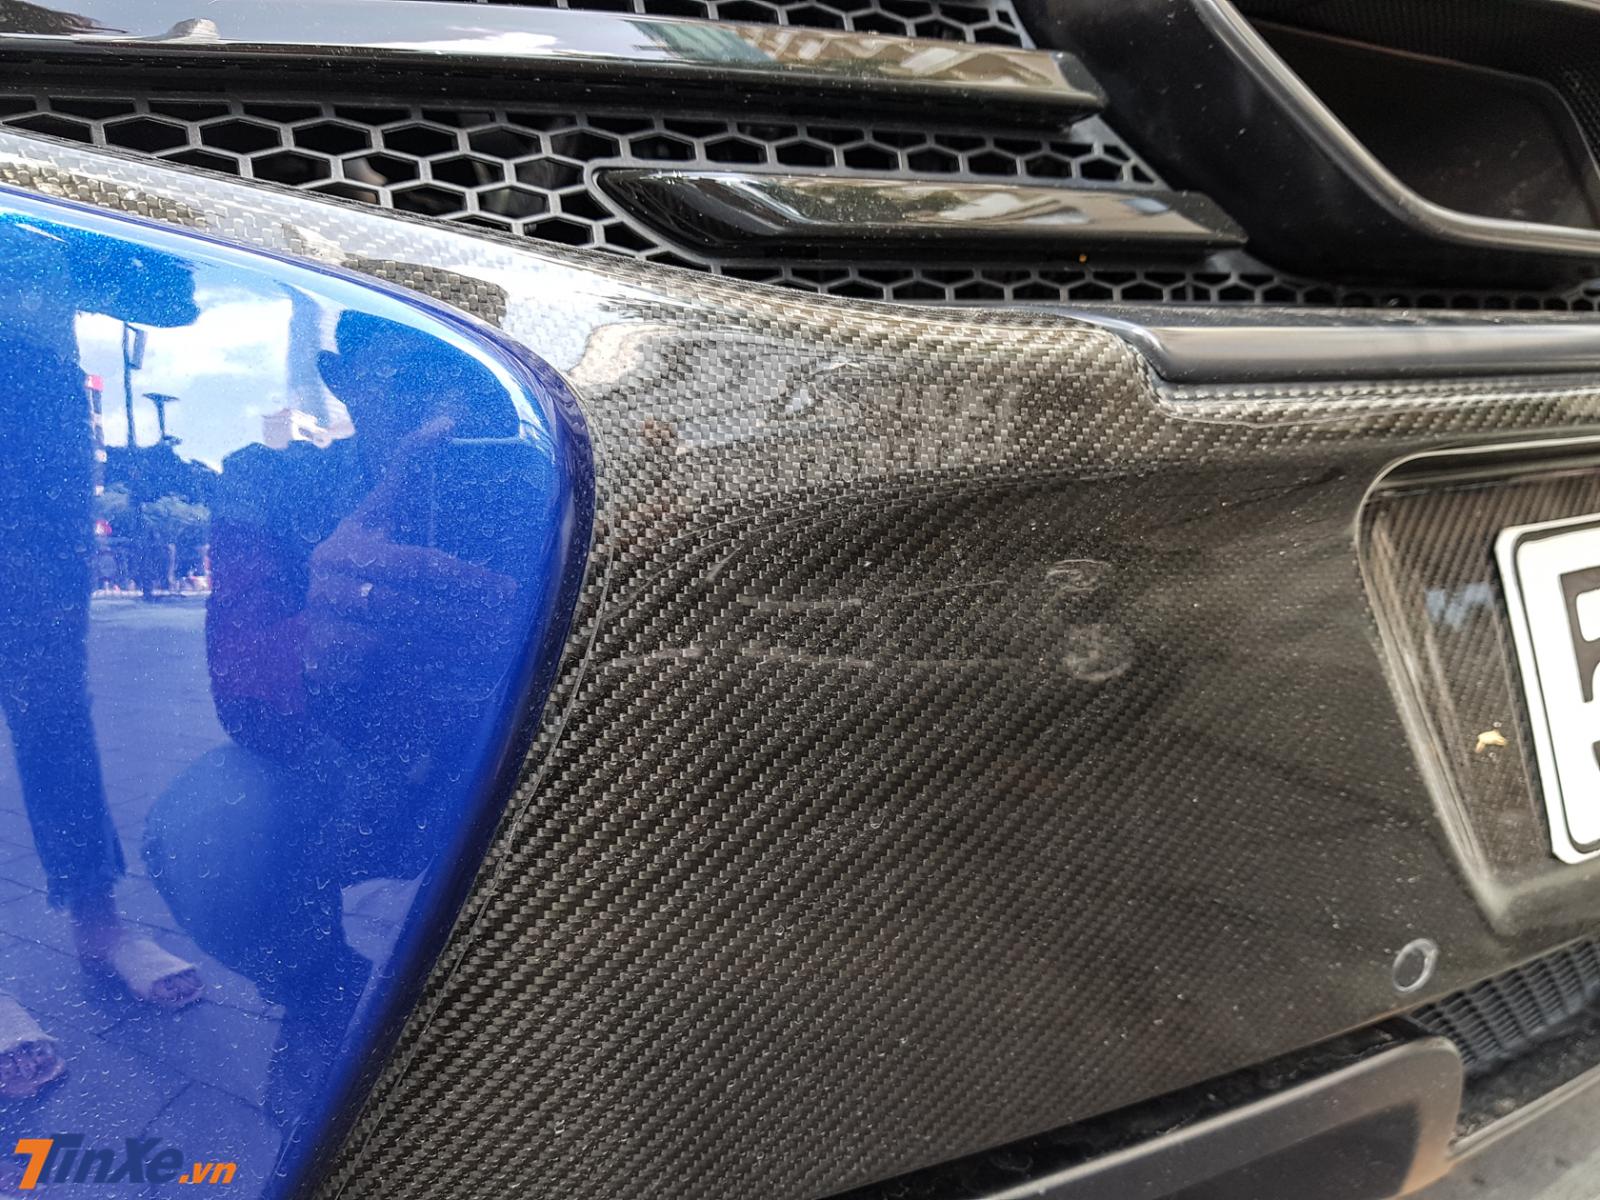 Carbon được nhìn thấy rất nhiều ở ngoại thất siêu xe McLaren 650S Spider màu xanh Aurora Blue này, cản va sau cũng không ngoại lệ